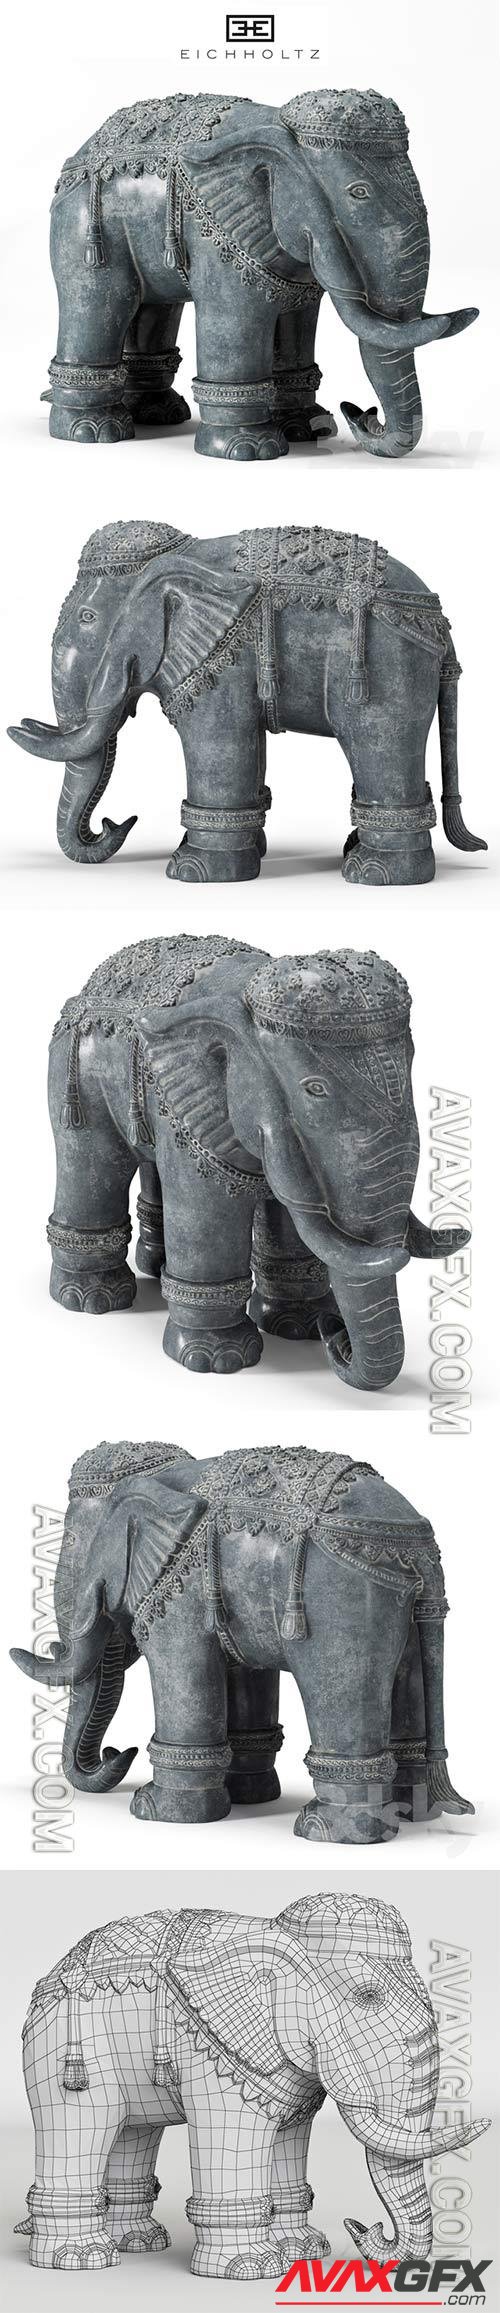 3D Models EICHHOLTZ ELEPHANT XL